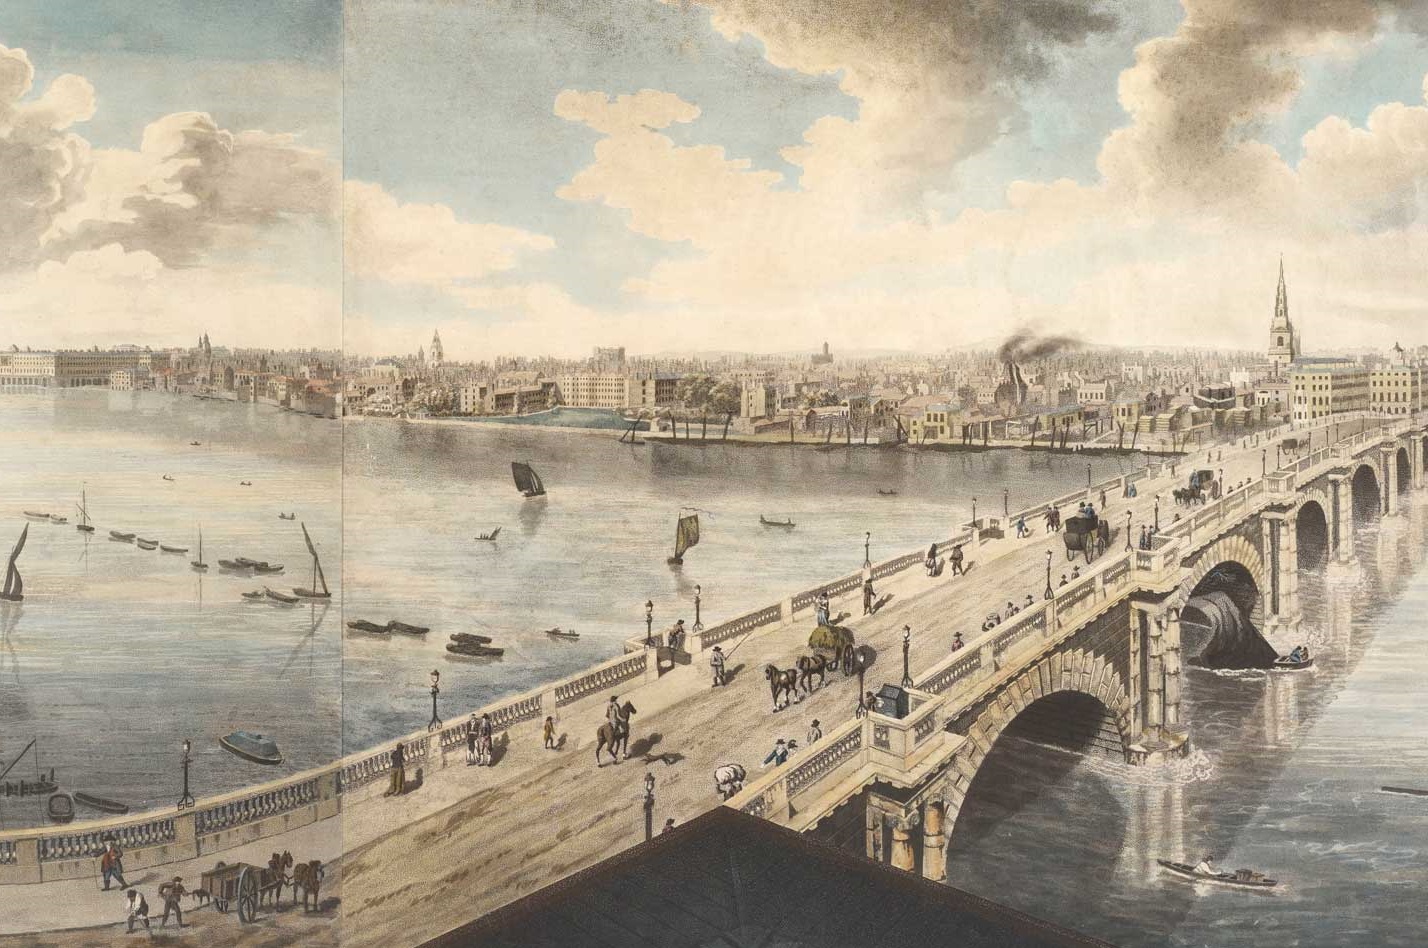 Panorama painting of Blackfriars Bridge 